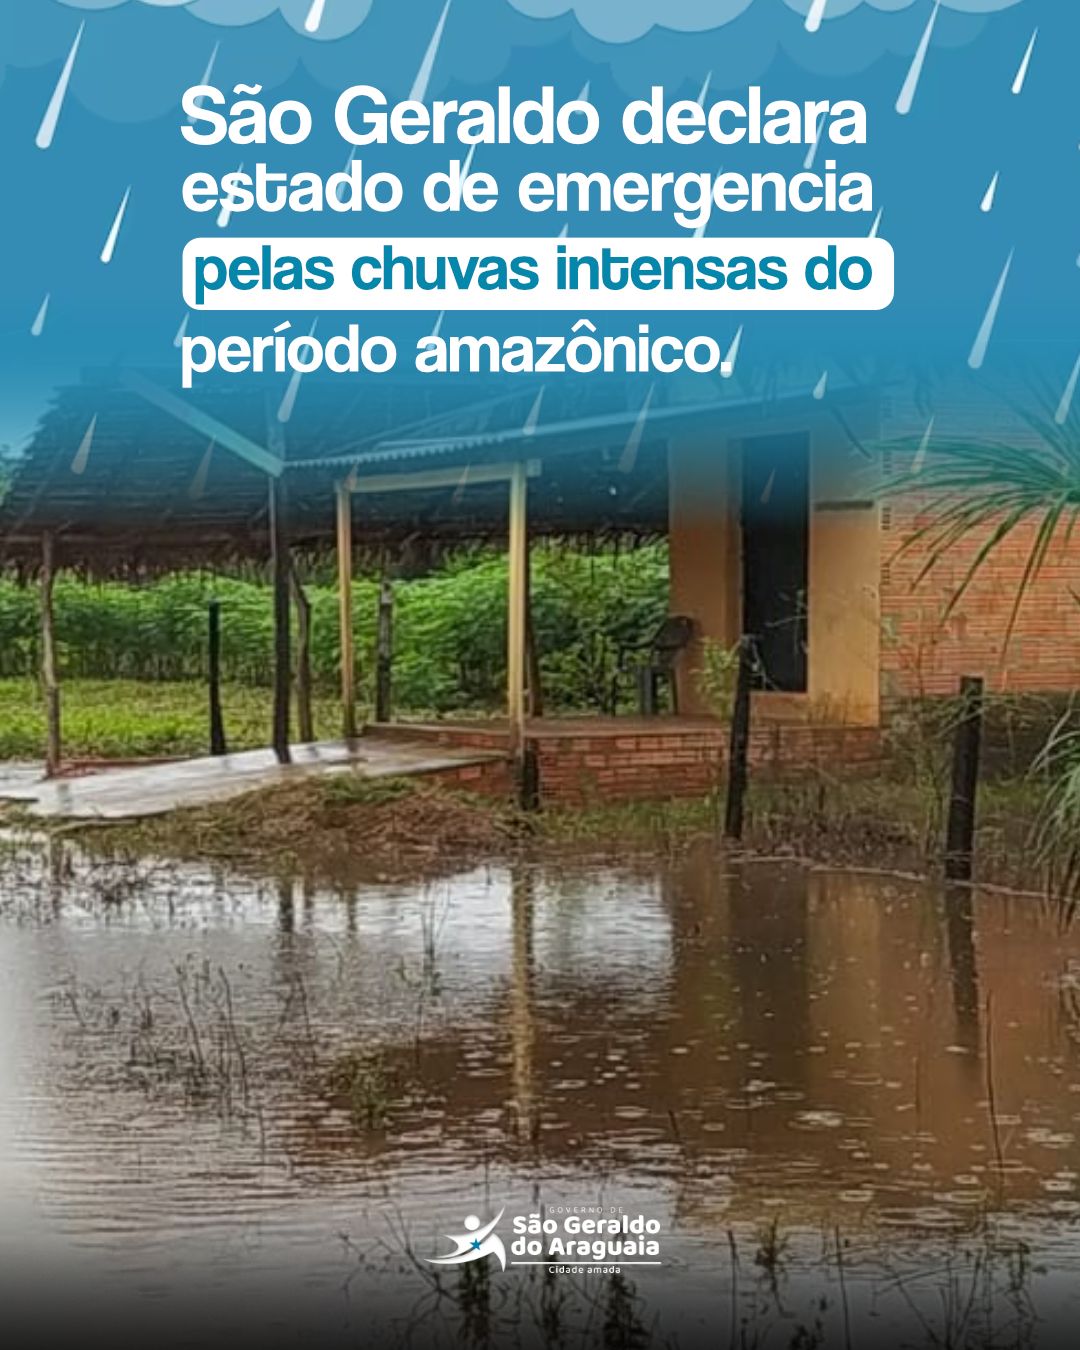 São Geraldo do Araguaia sofre devido às intensas chuvas amazônicas!